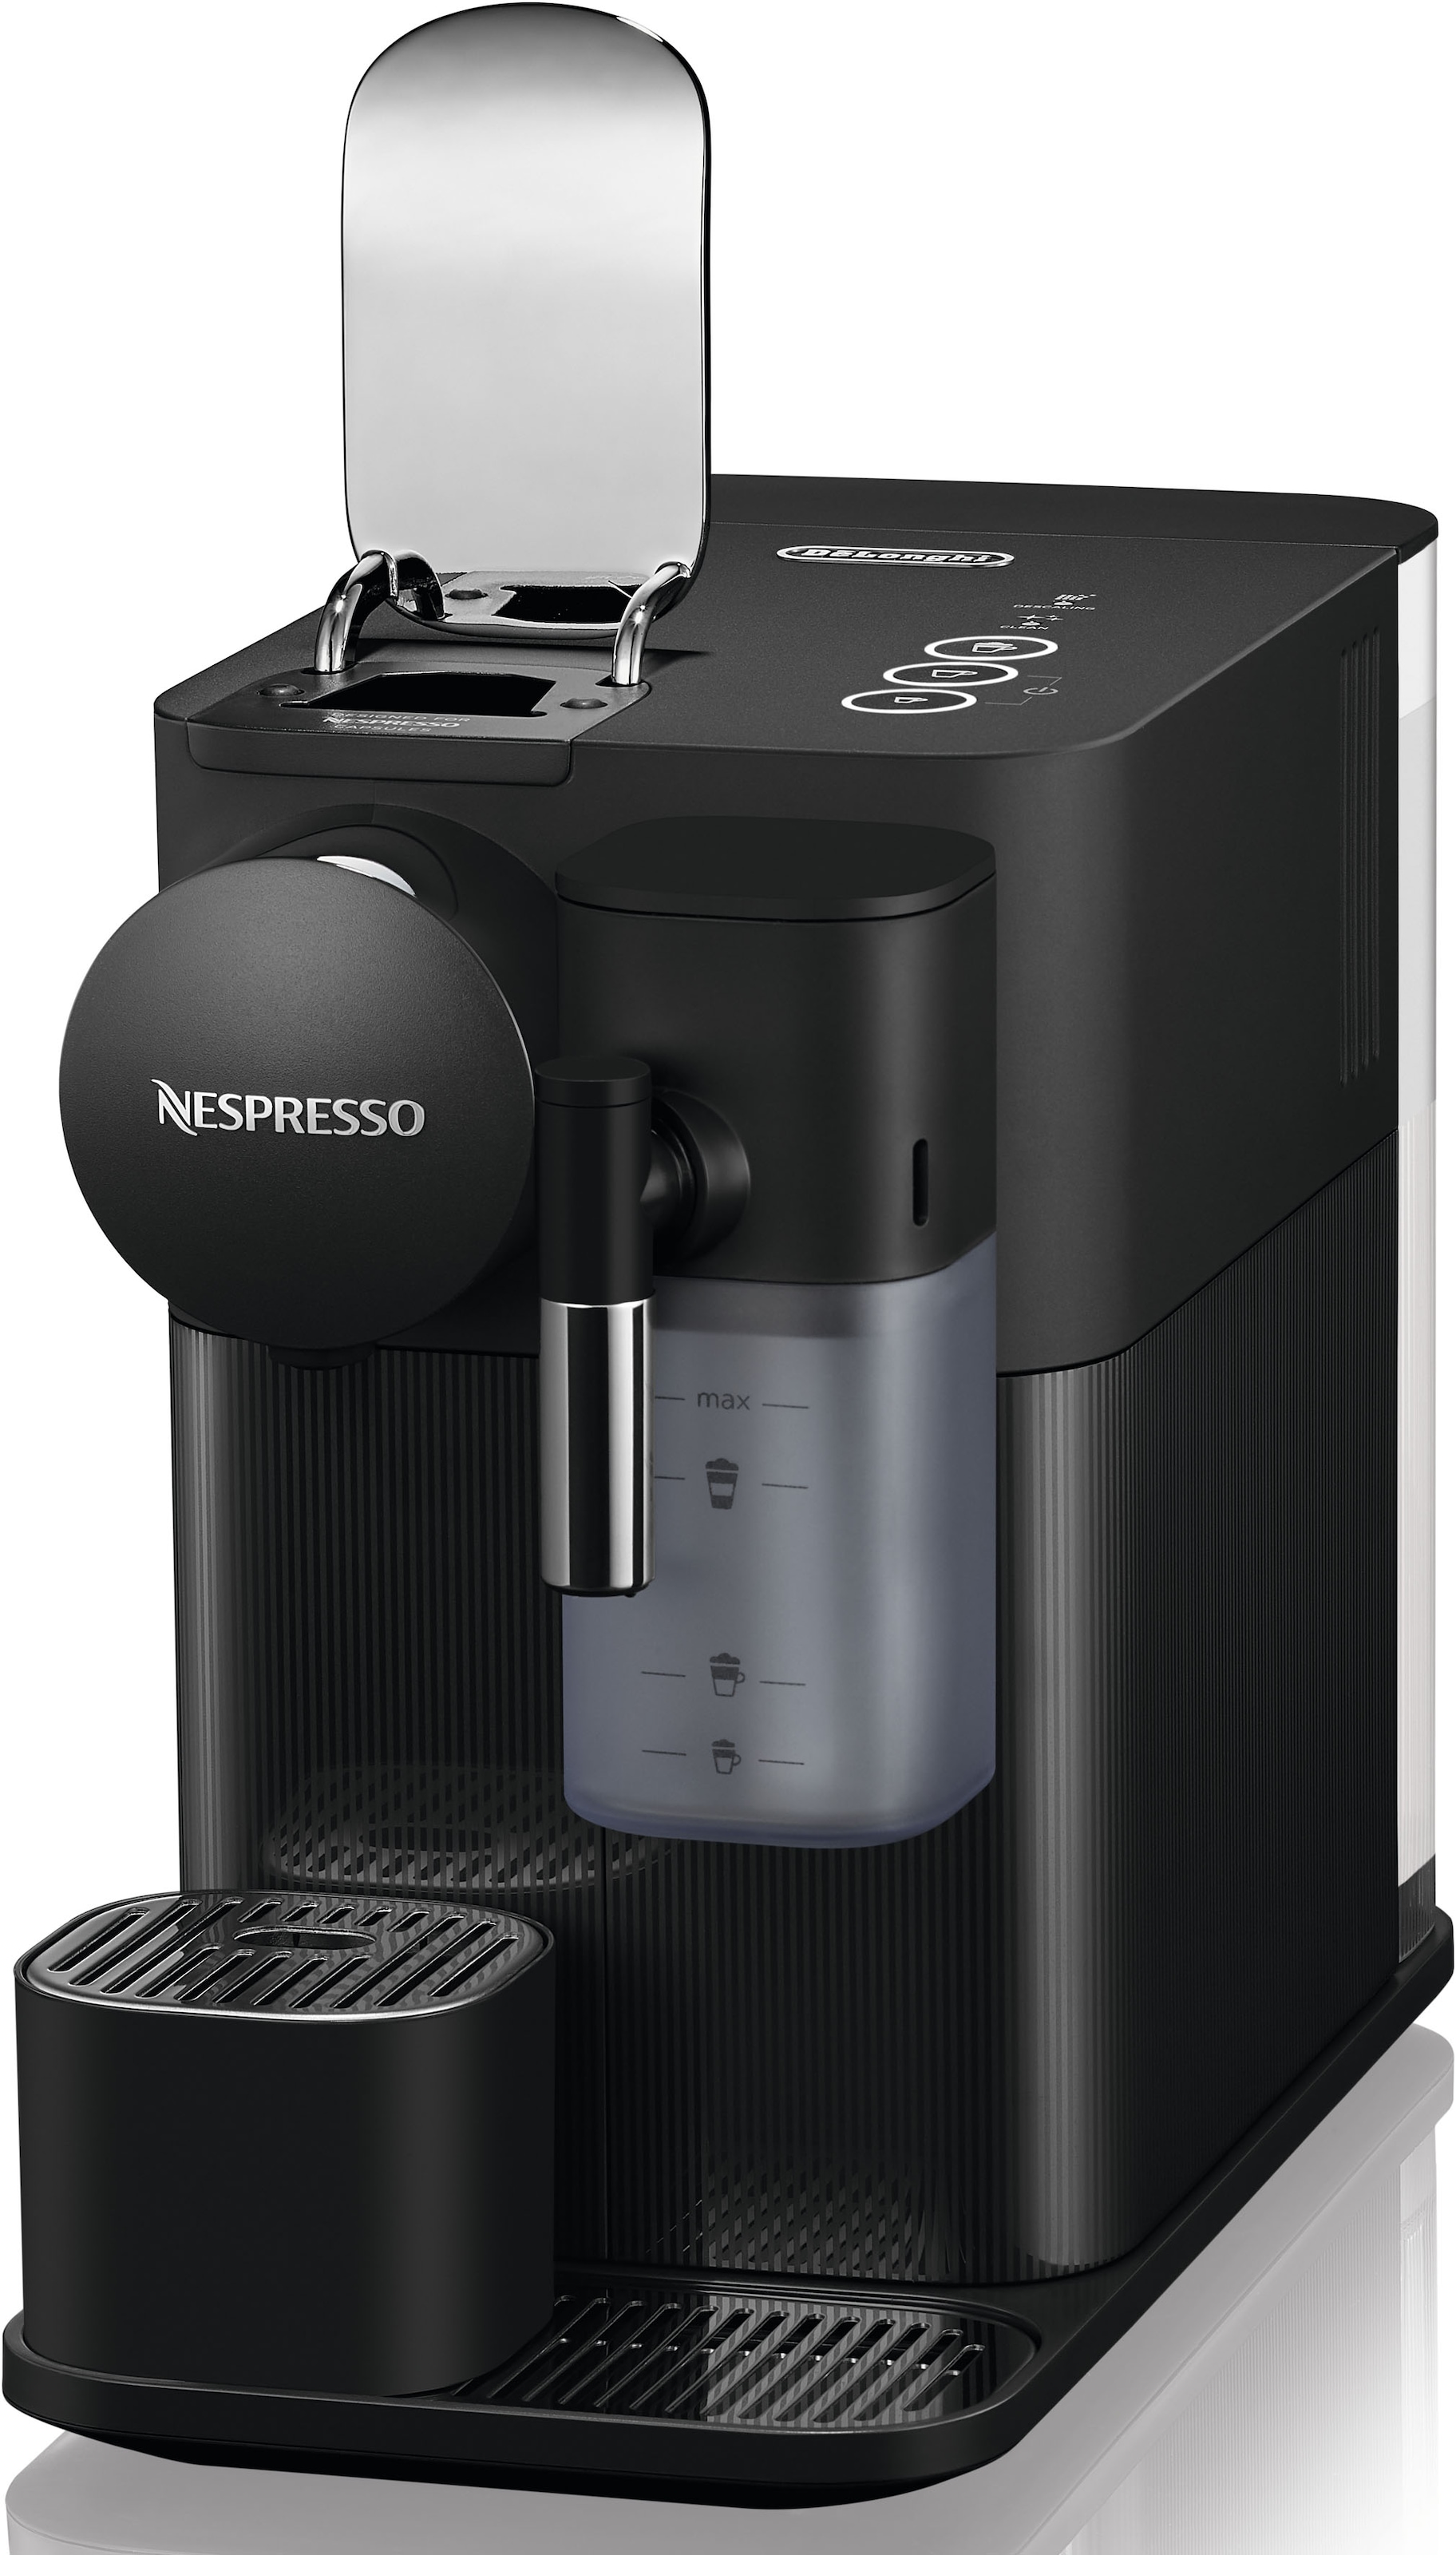 Nespresso Kapselmaschine »Lattissima One EN510.B von inkl. Black«, mit DeLonghi, kaufen 7 Willkommenspaket Kapseln